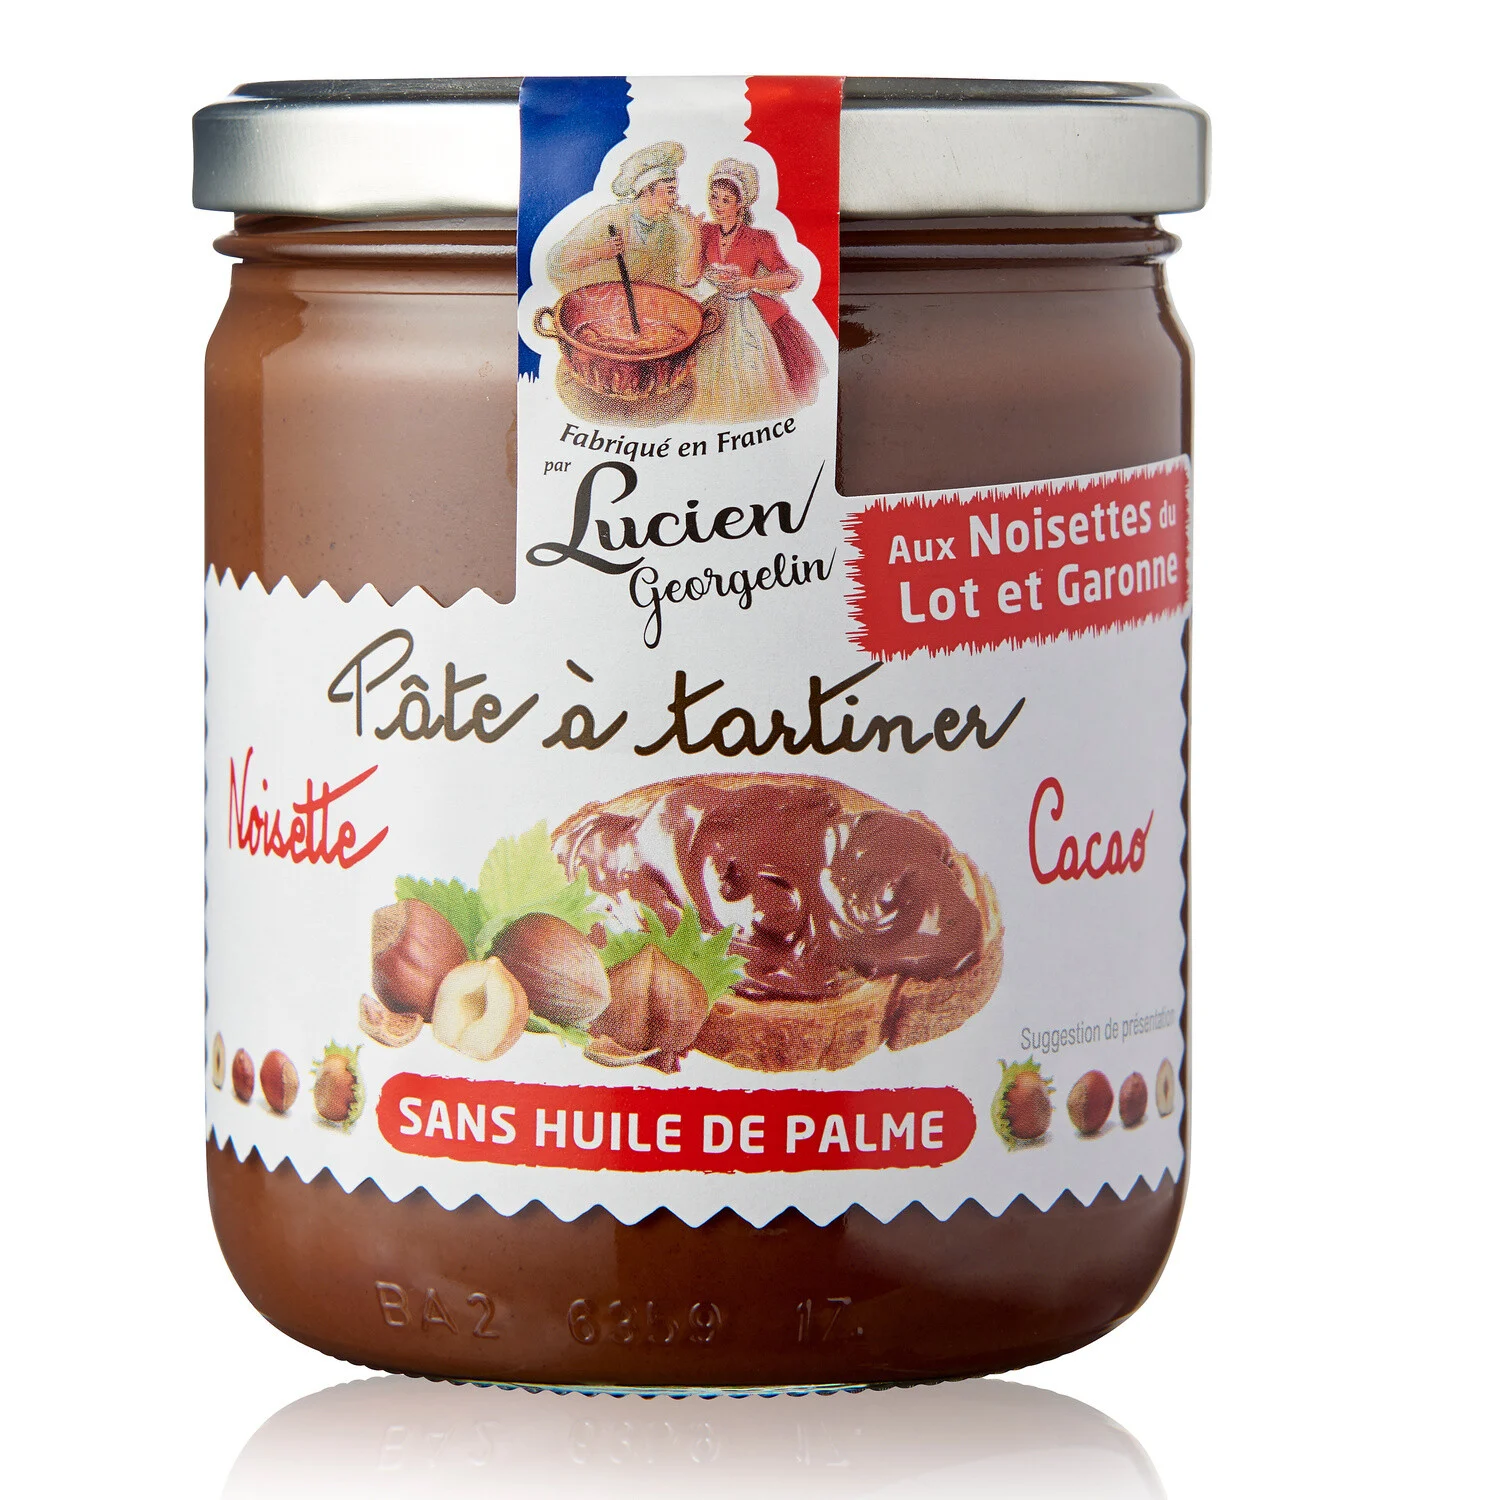 Crema De Avellanas De Lot Et Garonne Y Cacao
Sin Aceite de Palma 400g - LUCIEN GEORGELIN